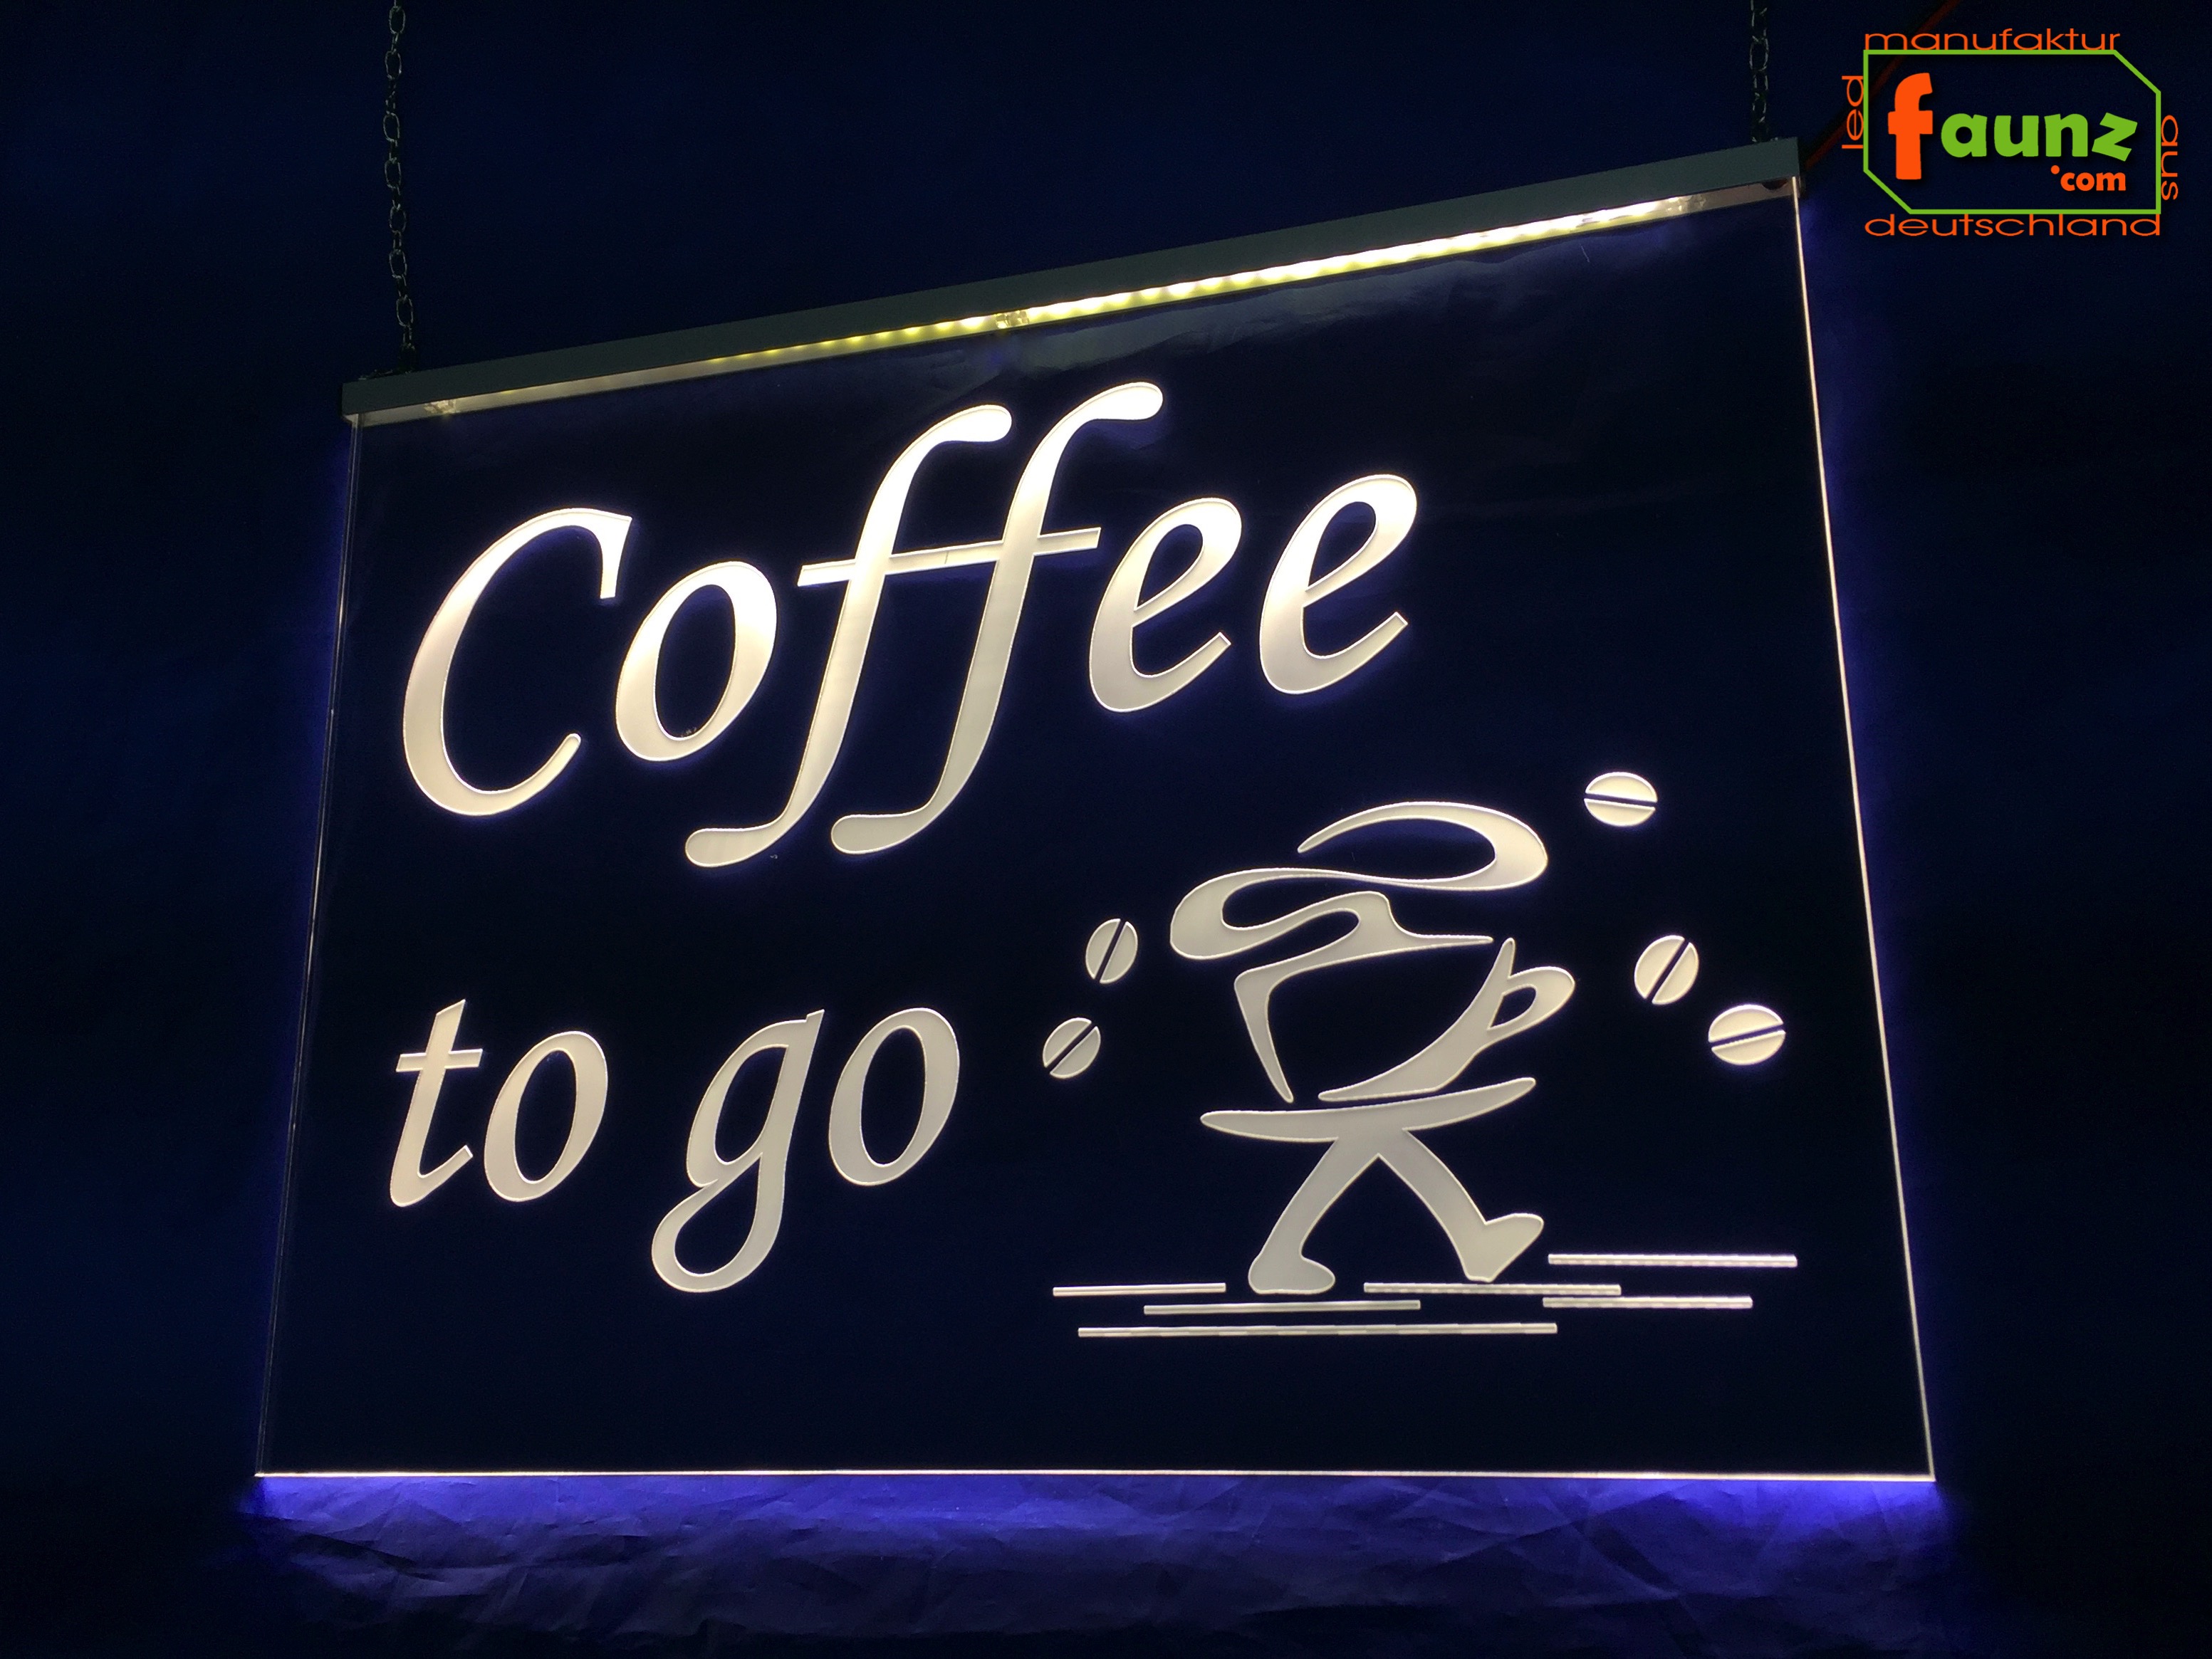 Leuchtreklame Coffee LED Leuchtreklame Werbung Schilder 